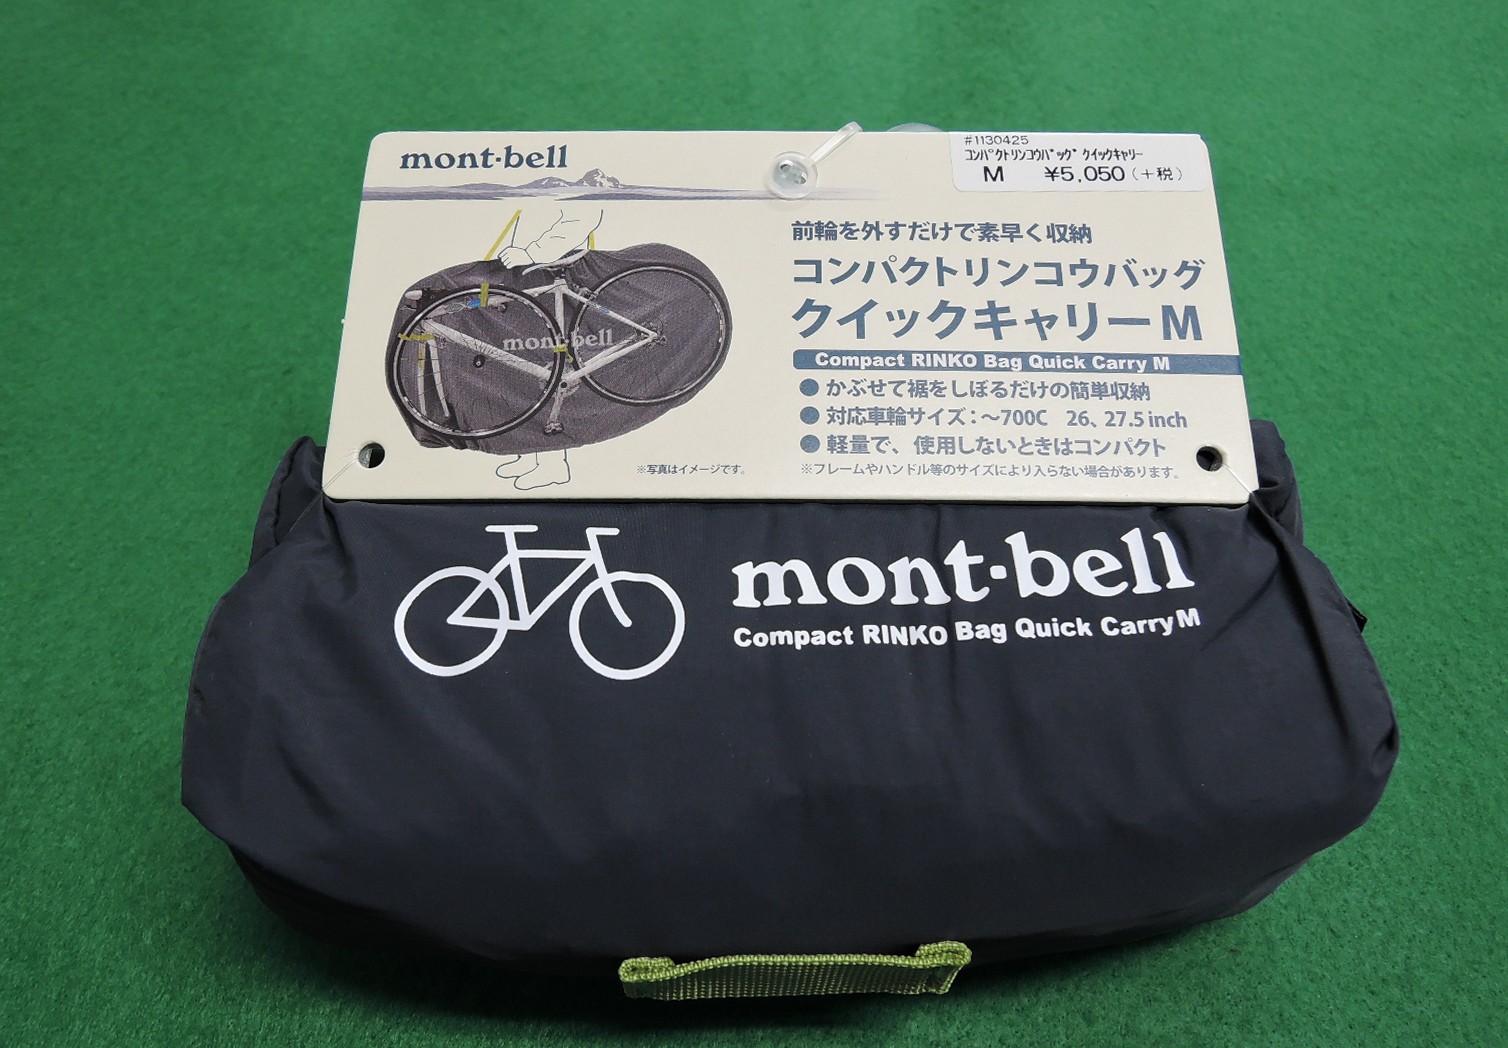 mont-bell輪行袋を購入、携行方法を考える